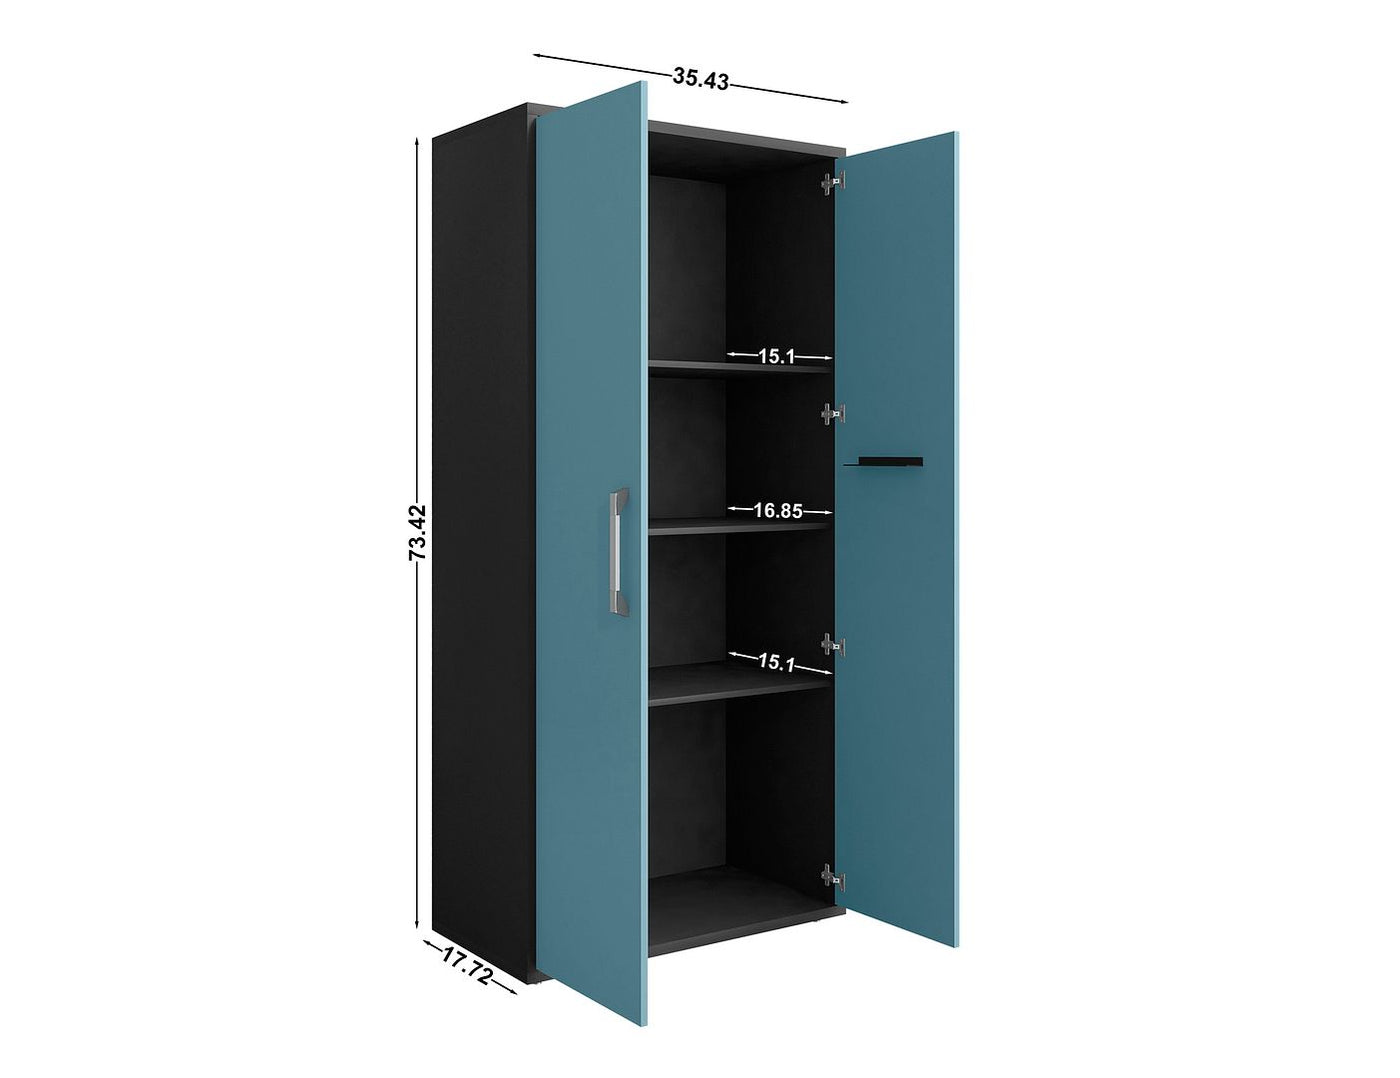 Lunde Storage Cabinet - Matte Black/Aqua Blue - Set of 3